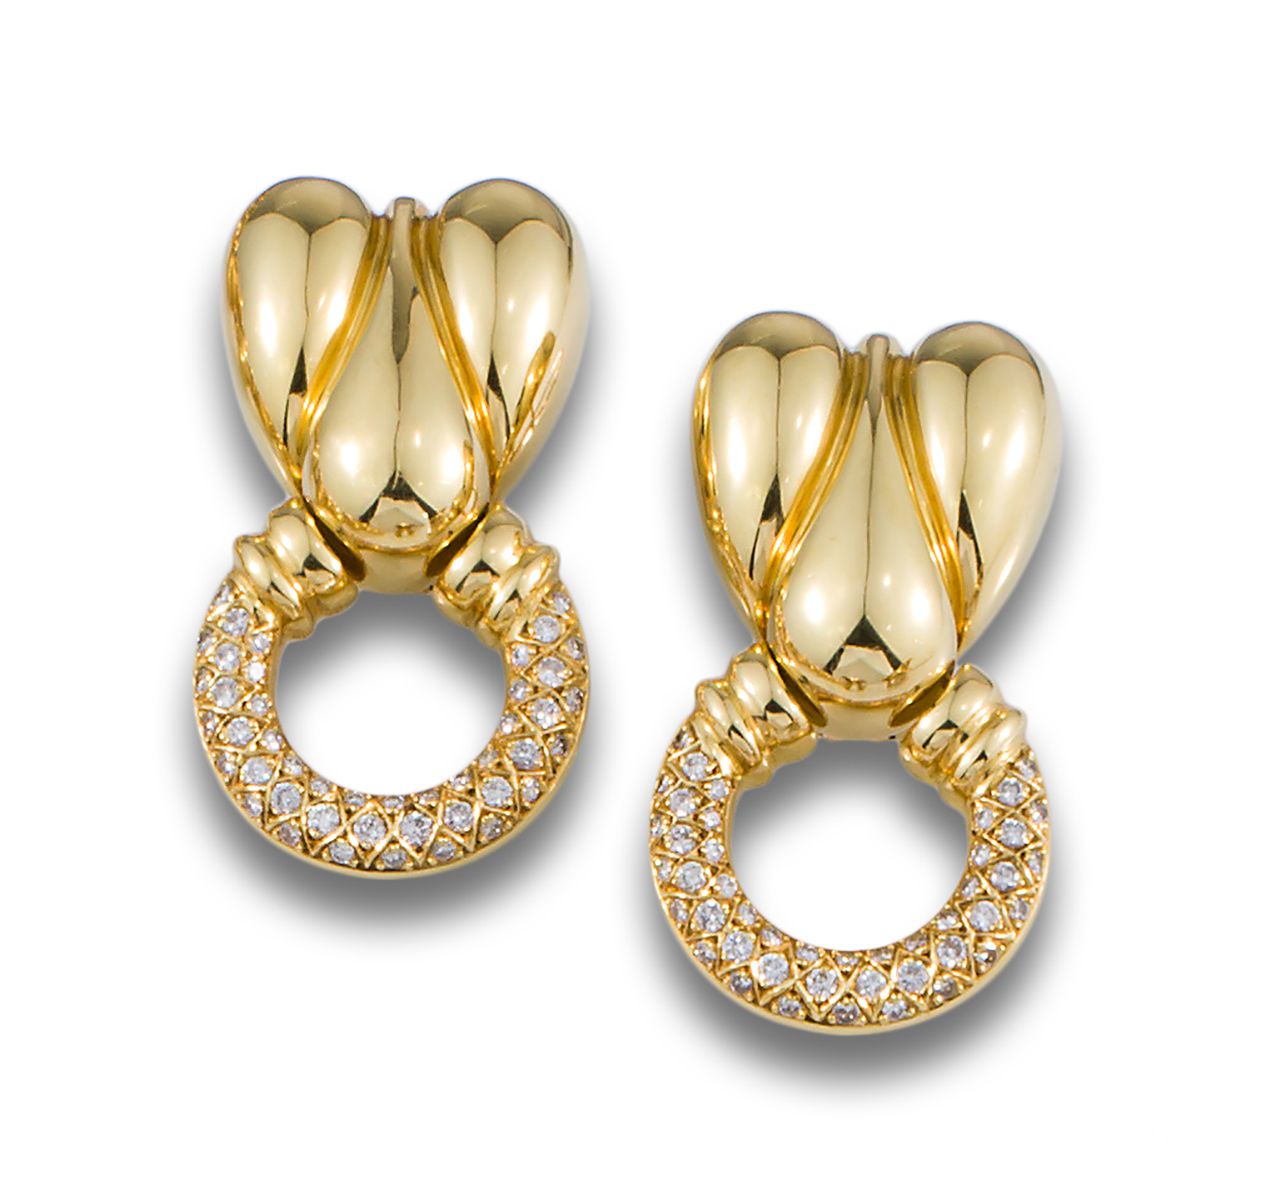 GOLD HOOP EARRINGS BOMBE DIAMONDS 18kt yellow gold long earrings, upper part wit&hellip;